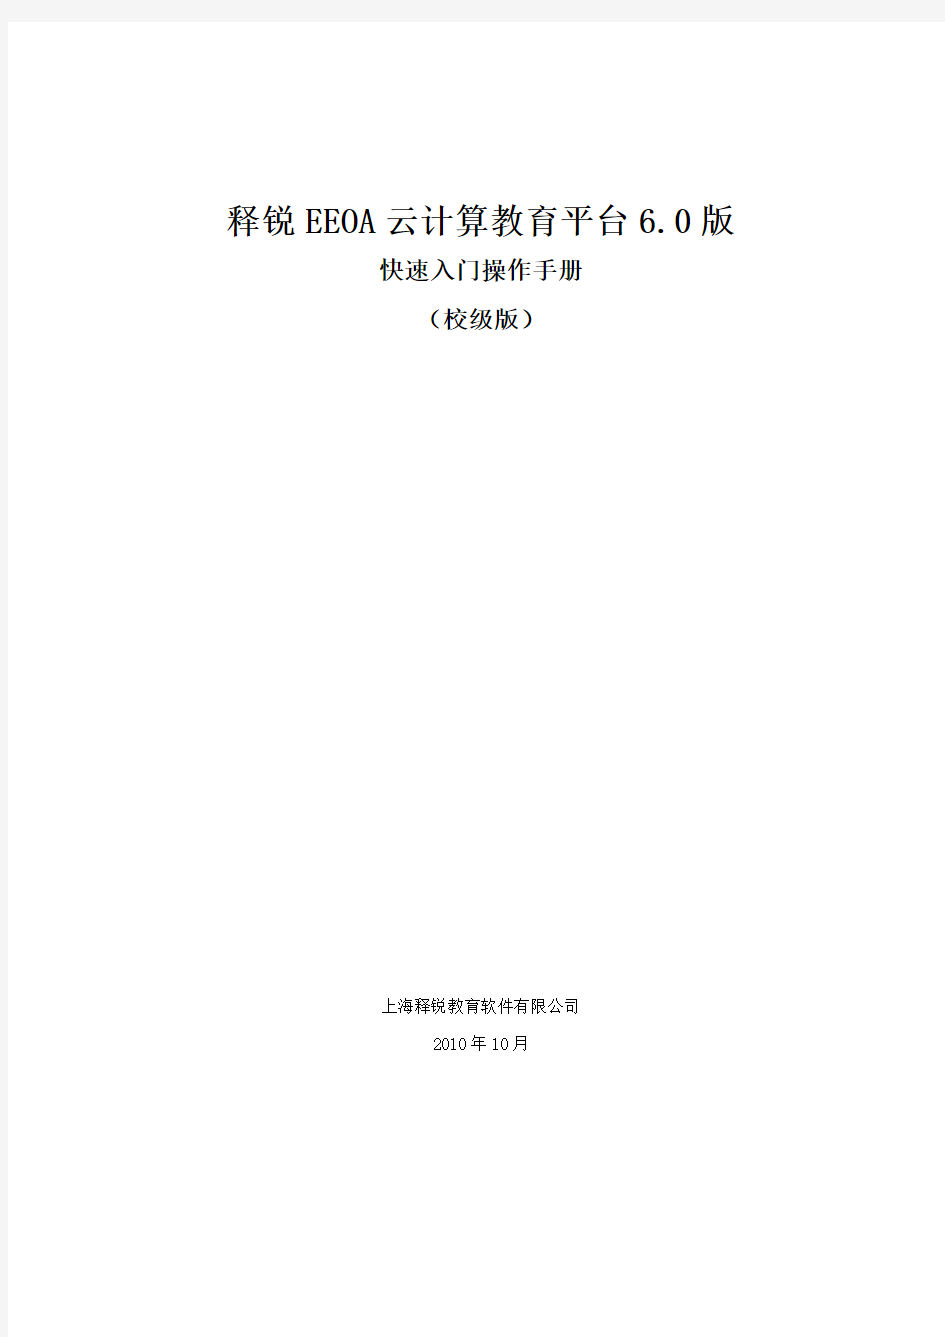 EEOA-快速入门操作手册(校级)